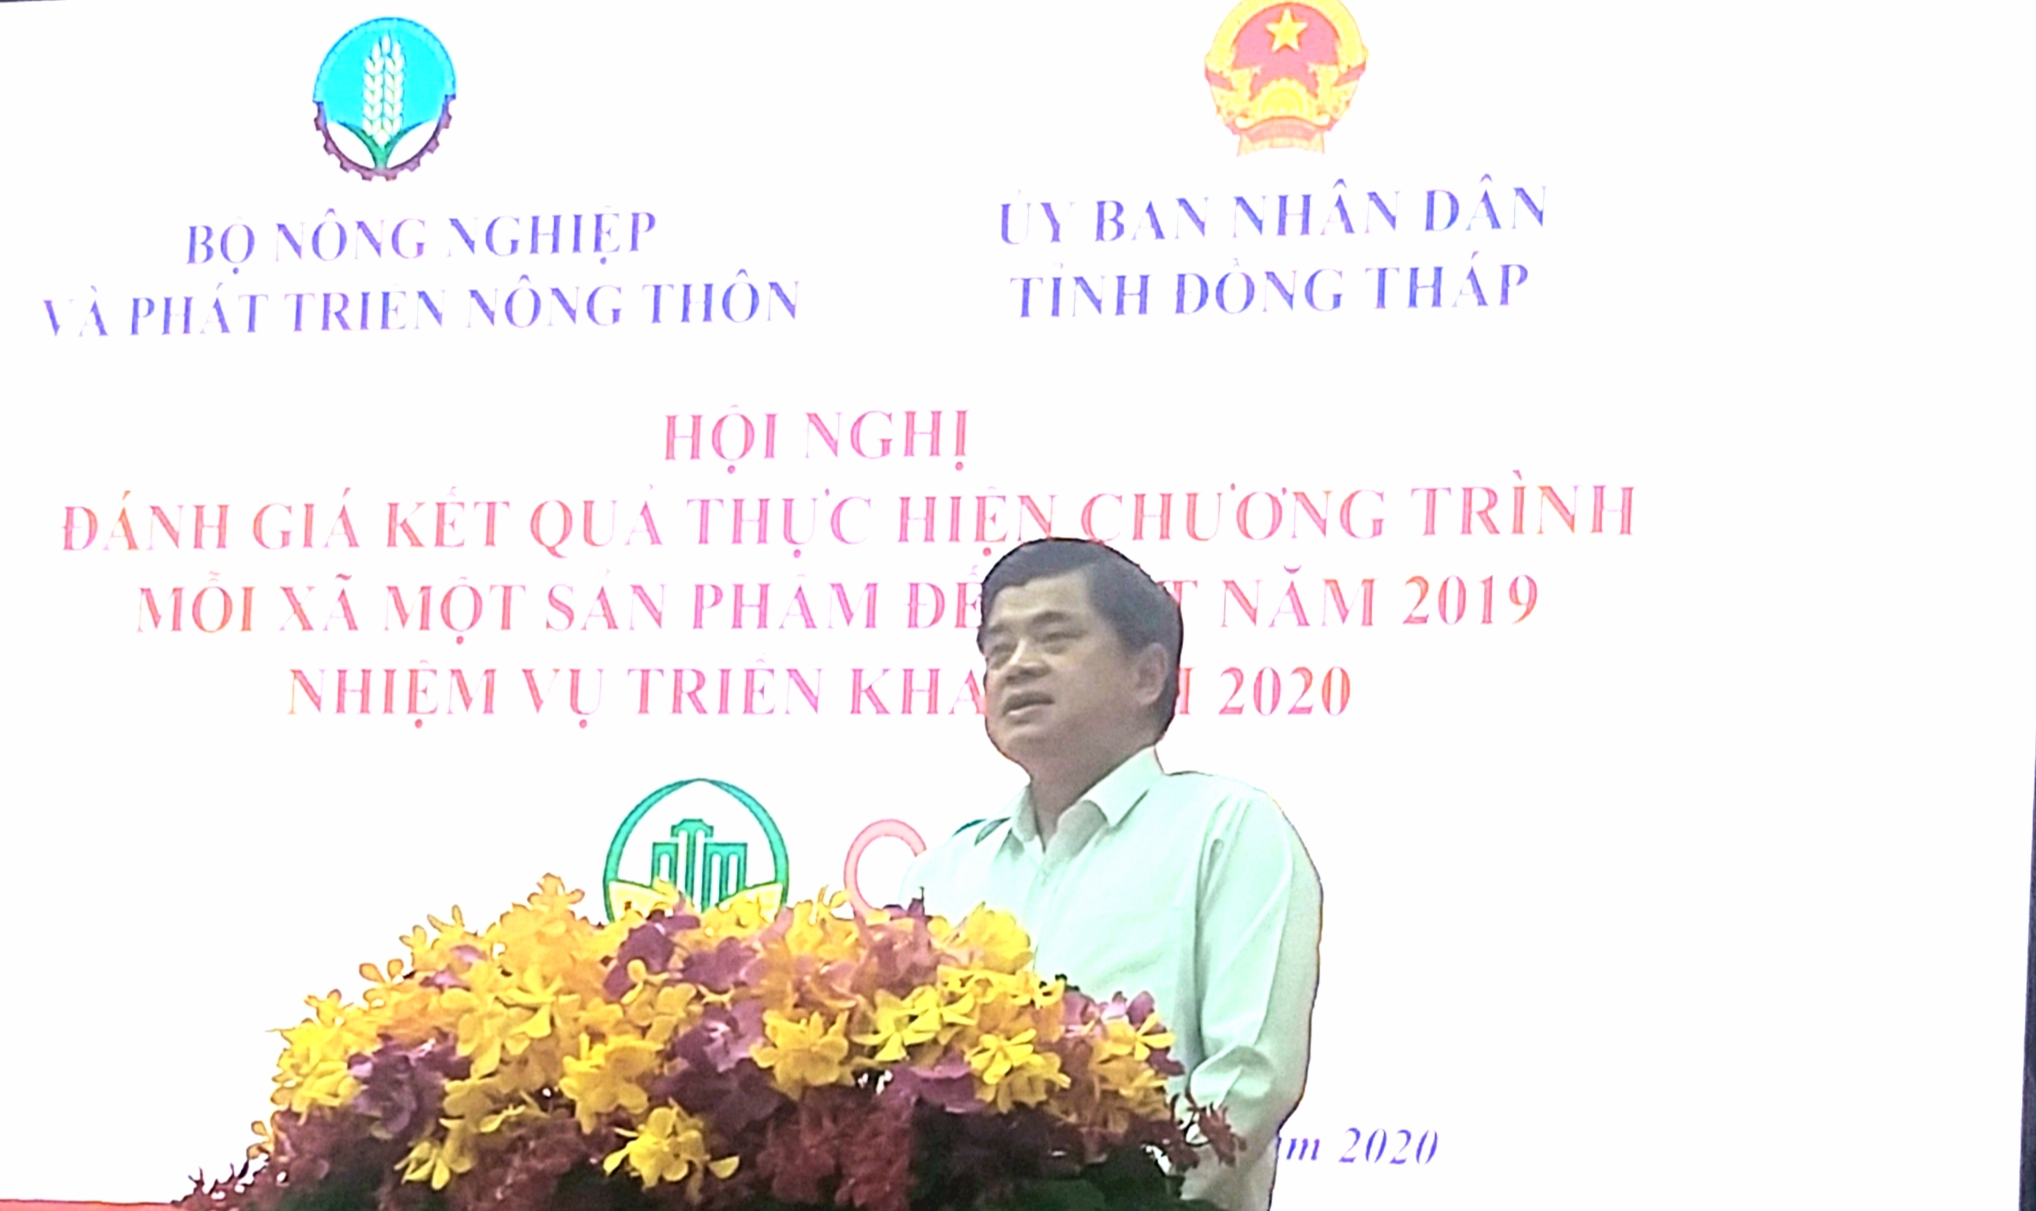 Ông Trần Thanh Nam, Thứ trưởng Bộ NN&PTNT phát biểu tại hội nghị